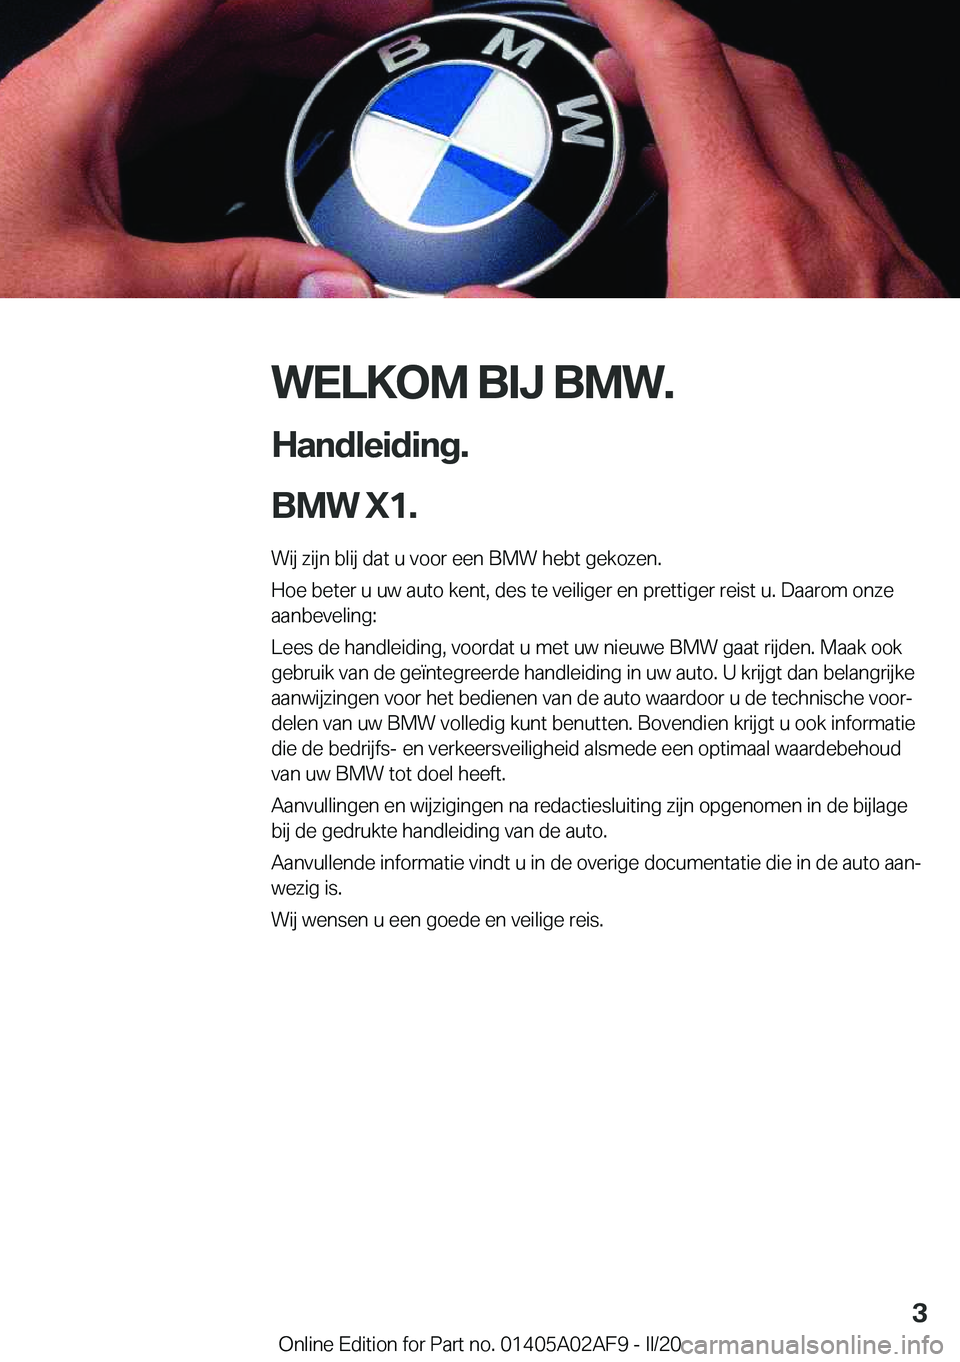 BMW X1 2020  Instructieboekjes (in Dutch) �W�E�L�K�O�M��B�I�J��B�M�W�.
�H�a�n�d�l�e�i�d�i�n�g�.
�B�M�W��X�1�. �W�i�j��z�i�j�n��b�l�i�j��d�a�t��u��v�o�o�r��e�e�n��B�M�W��h�e�b�t��g�e�k�o�z�e�n�.�H�o�e��b�e�t�e�r��u��u�w��a�u�t�